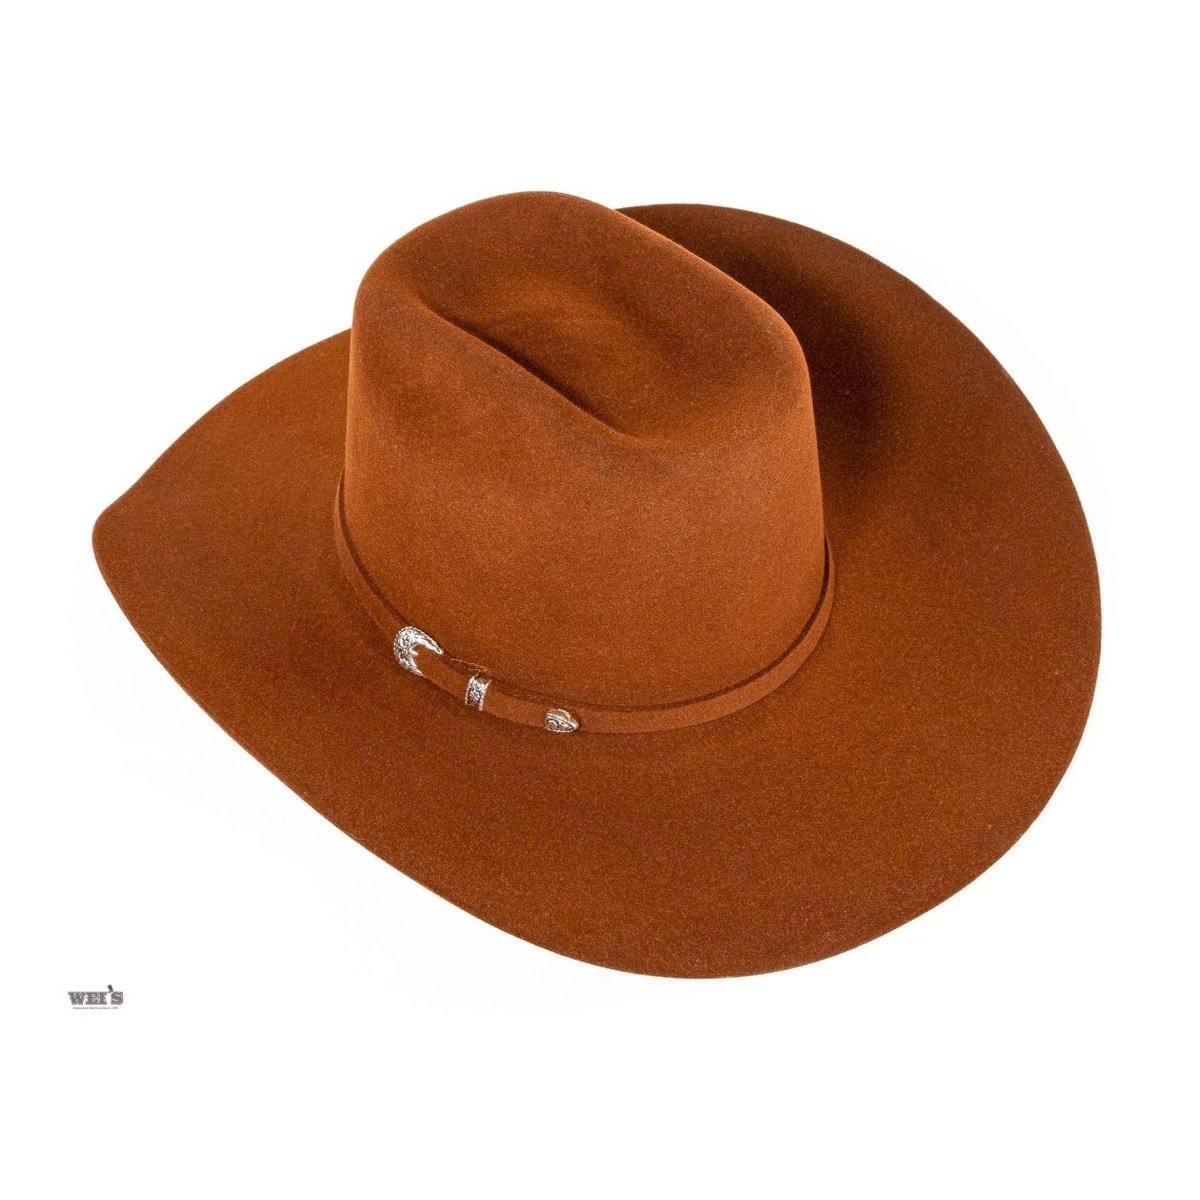 https://weiswesternwear.com/cdn/shop/products/Resistol-Cowboy-Hat-Fur-Felt-4-5-8-Crown-4-1-4-Bri-4.jpg?v=1711645134&width=1445